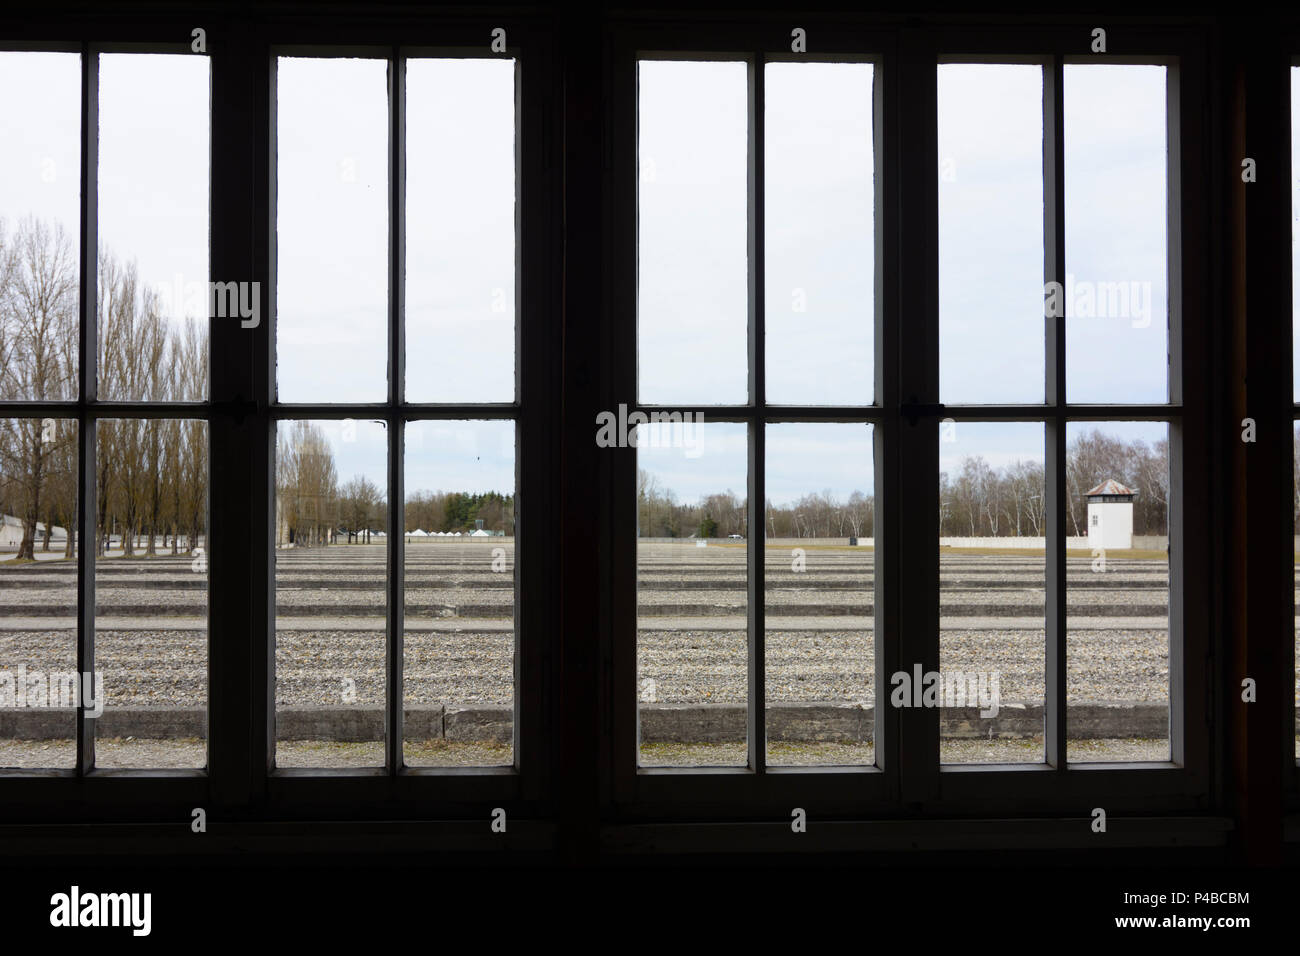 Dachau, Kz, Blick durch das Fenster des Gefangenen Baracke zu anderen 32  Baracken, die durch konkrete Grundlagen angegeben sind, Oberbayern, Bayern,  Deutschland Stockfotografie - Alamy